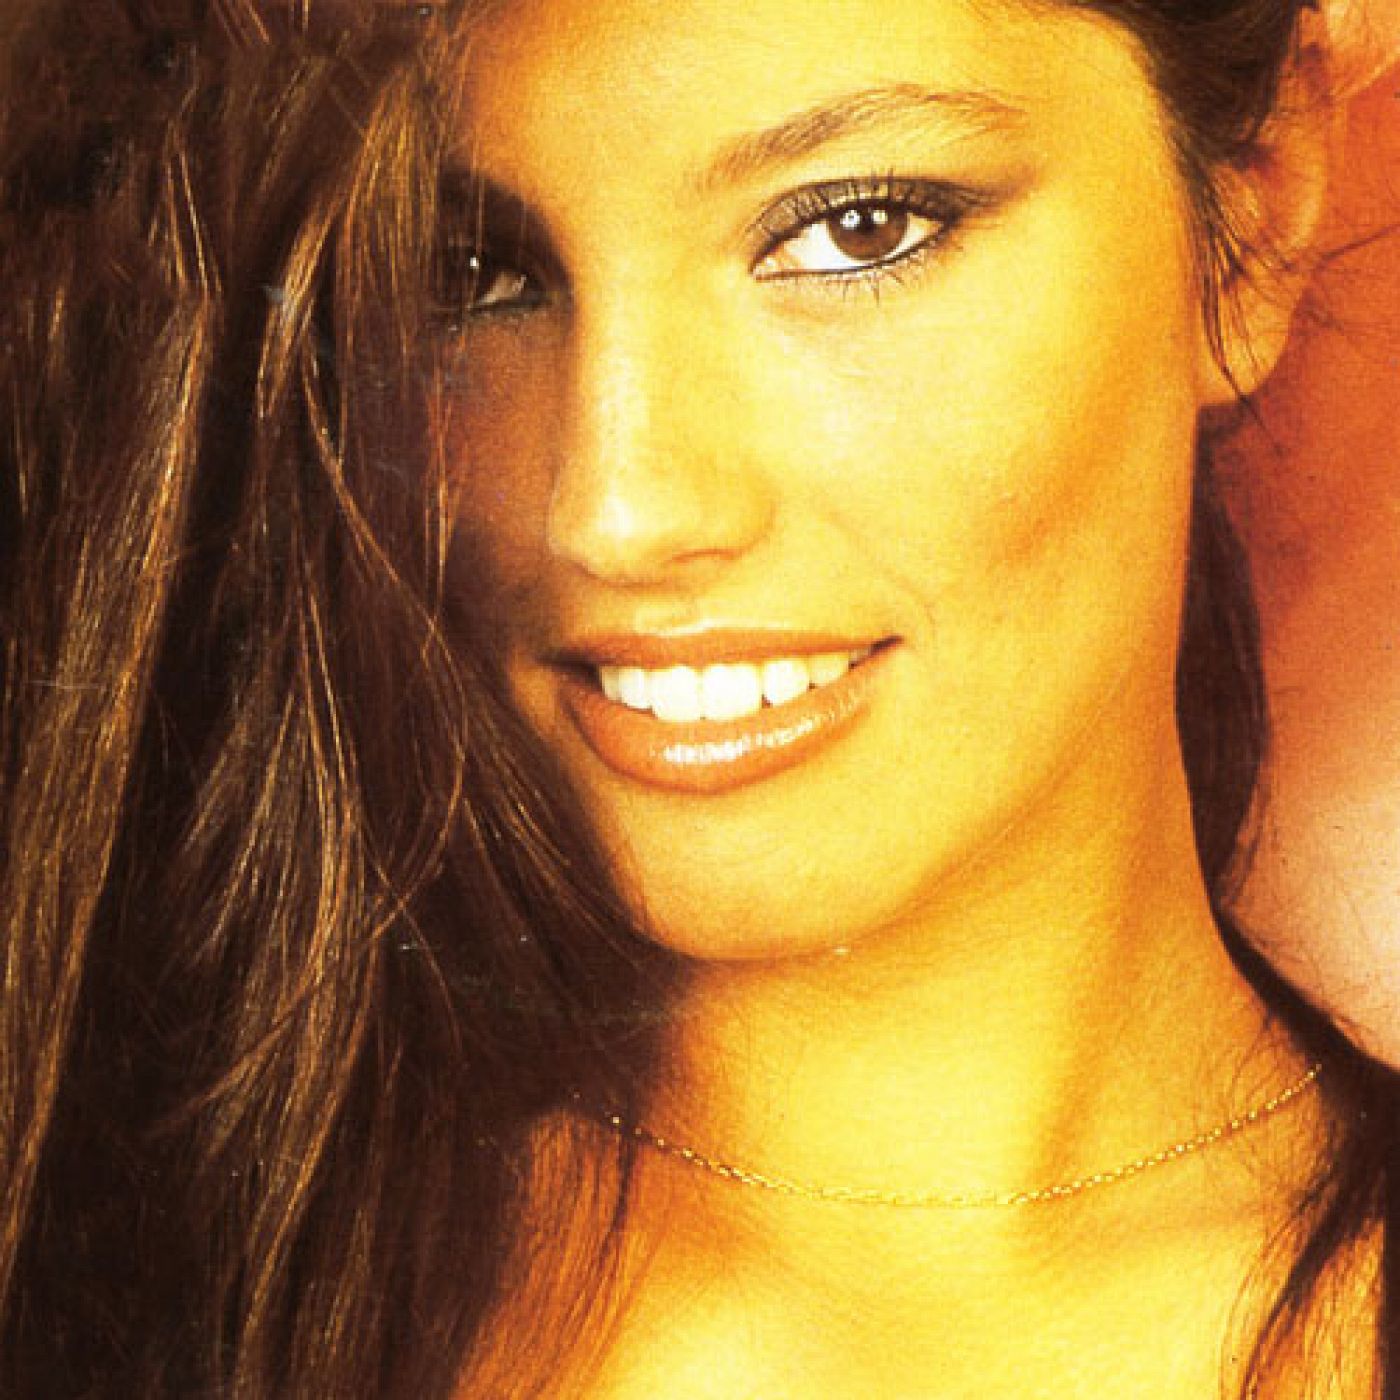 La guapísima Lucía en su foto promocional para el single de "Él".